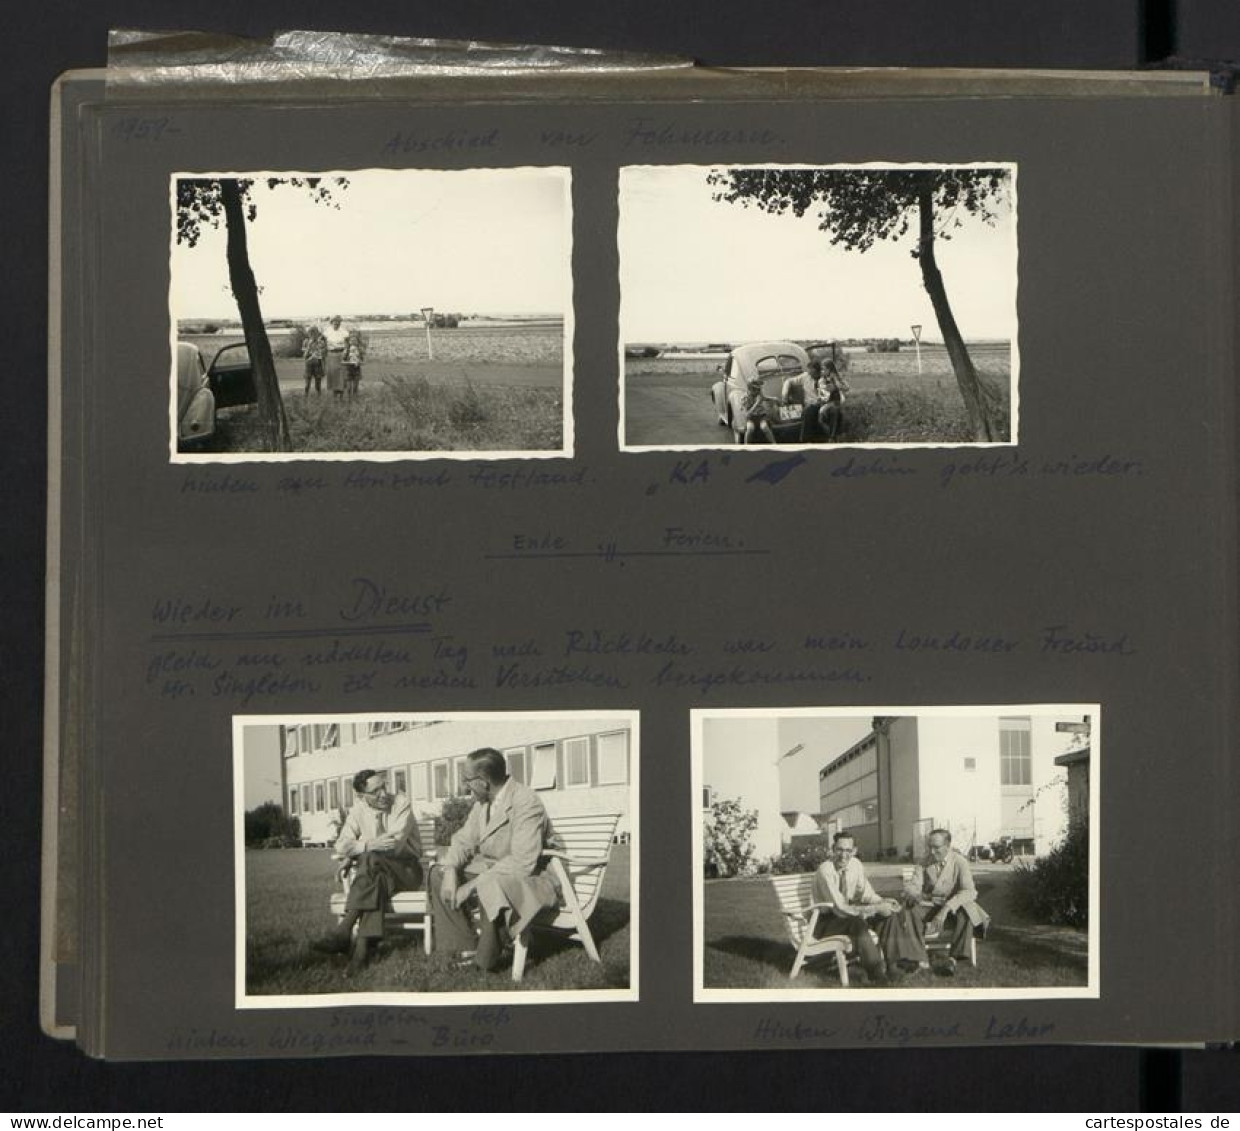 Fotoalbum mit 199 Fotografien, Ansicht Fehmarn, Familie Hess auf Reise mit VW Käfer nach der Ostsee, 1959 